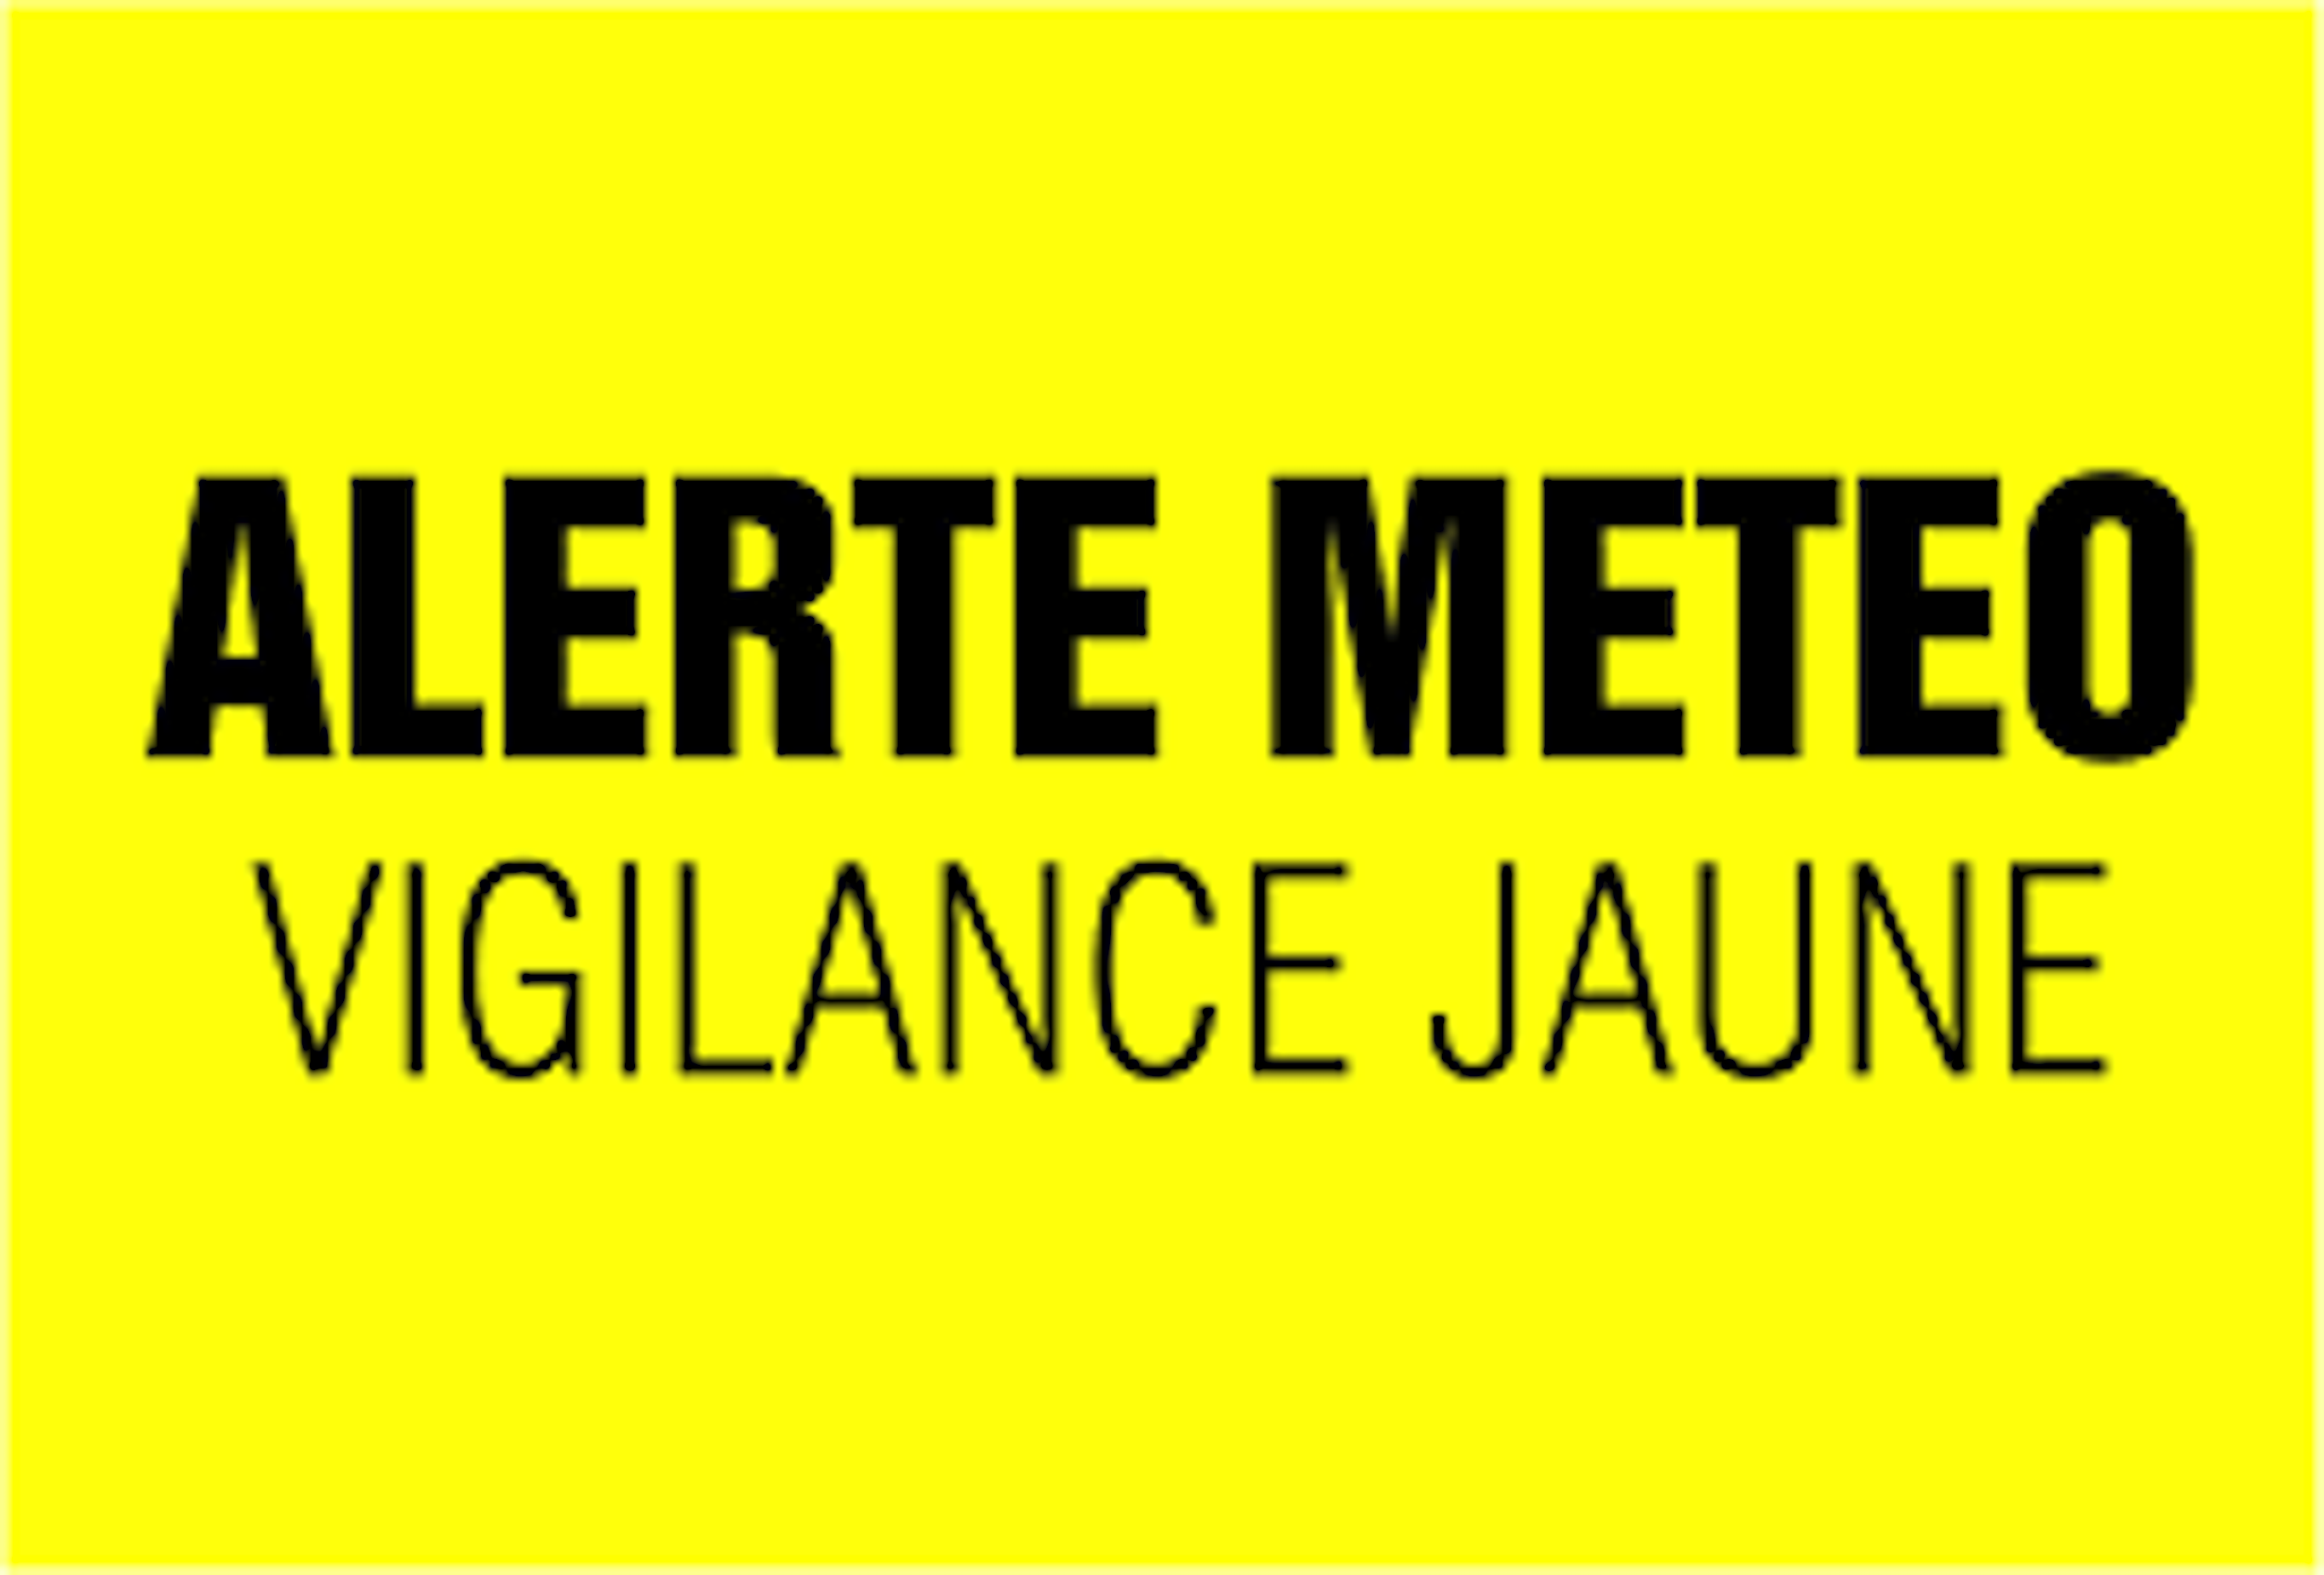 Meteo : vigilance jaune 